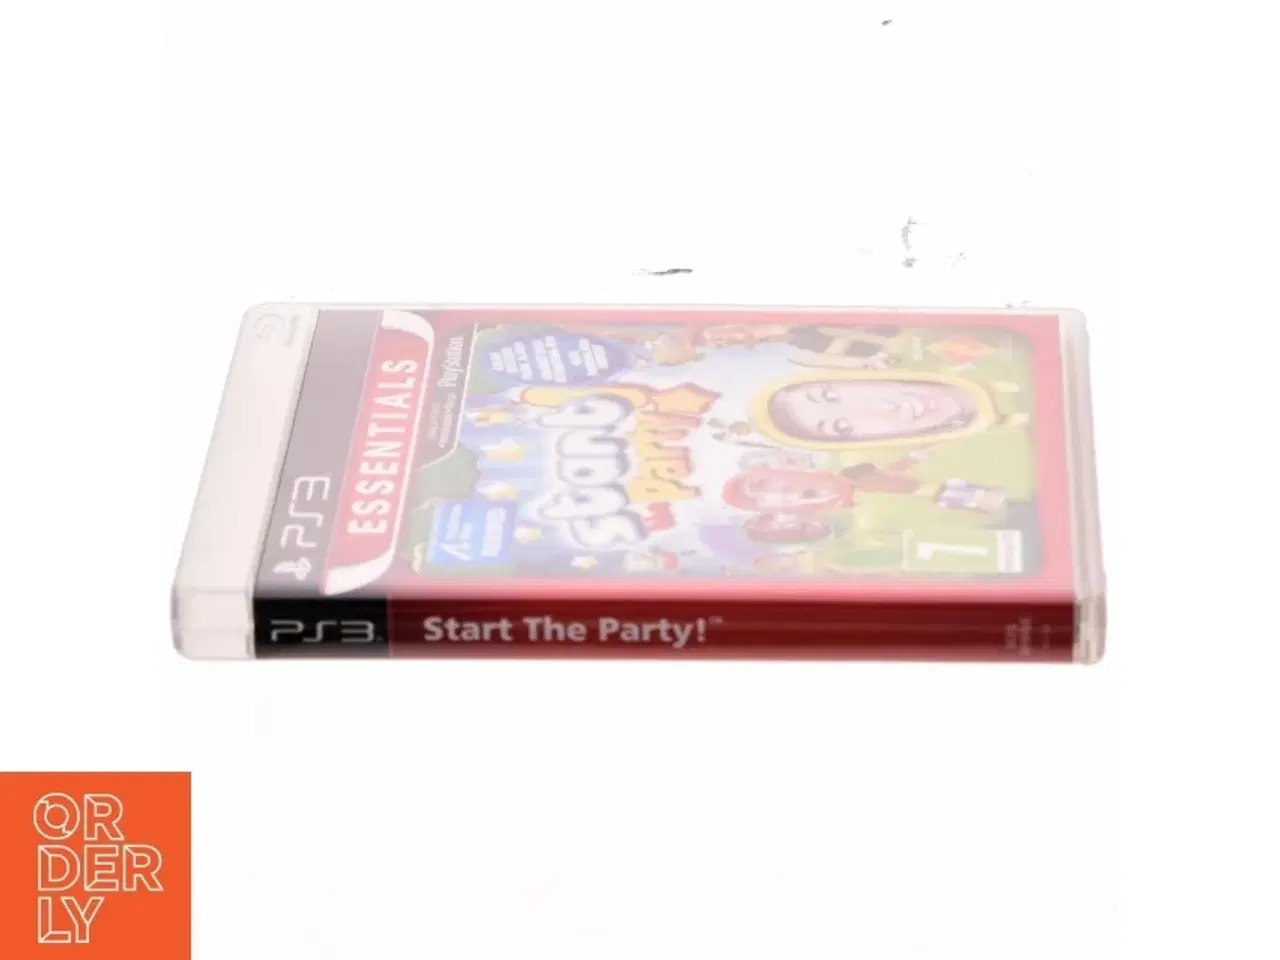 Billede 2 - PS3 start the party fra Playstation